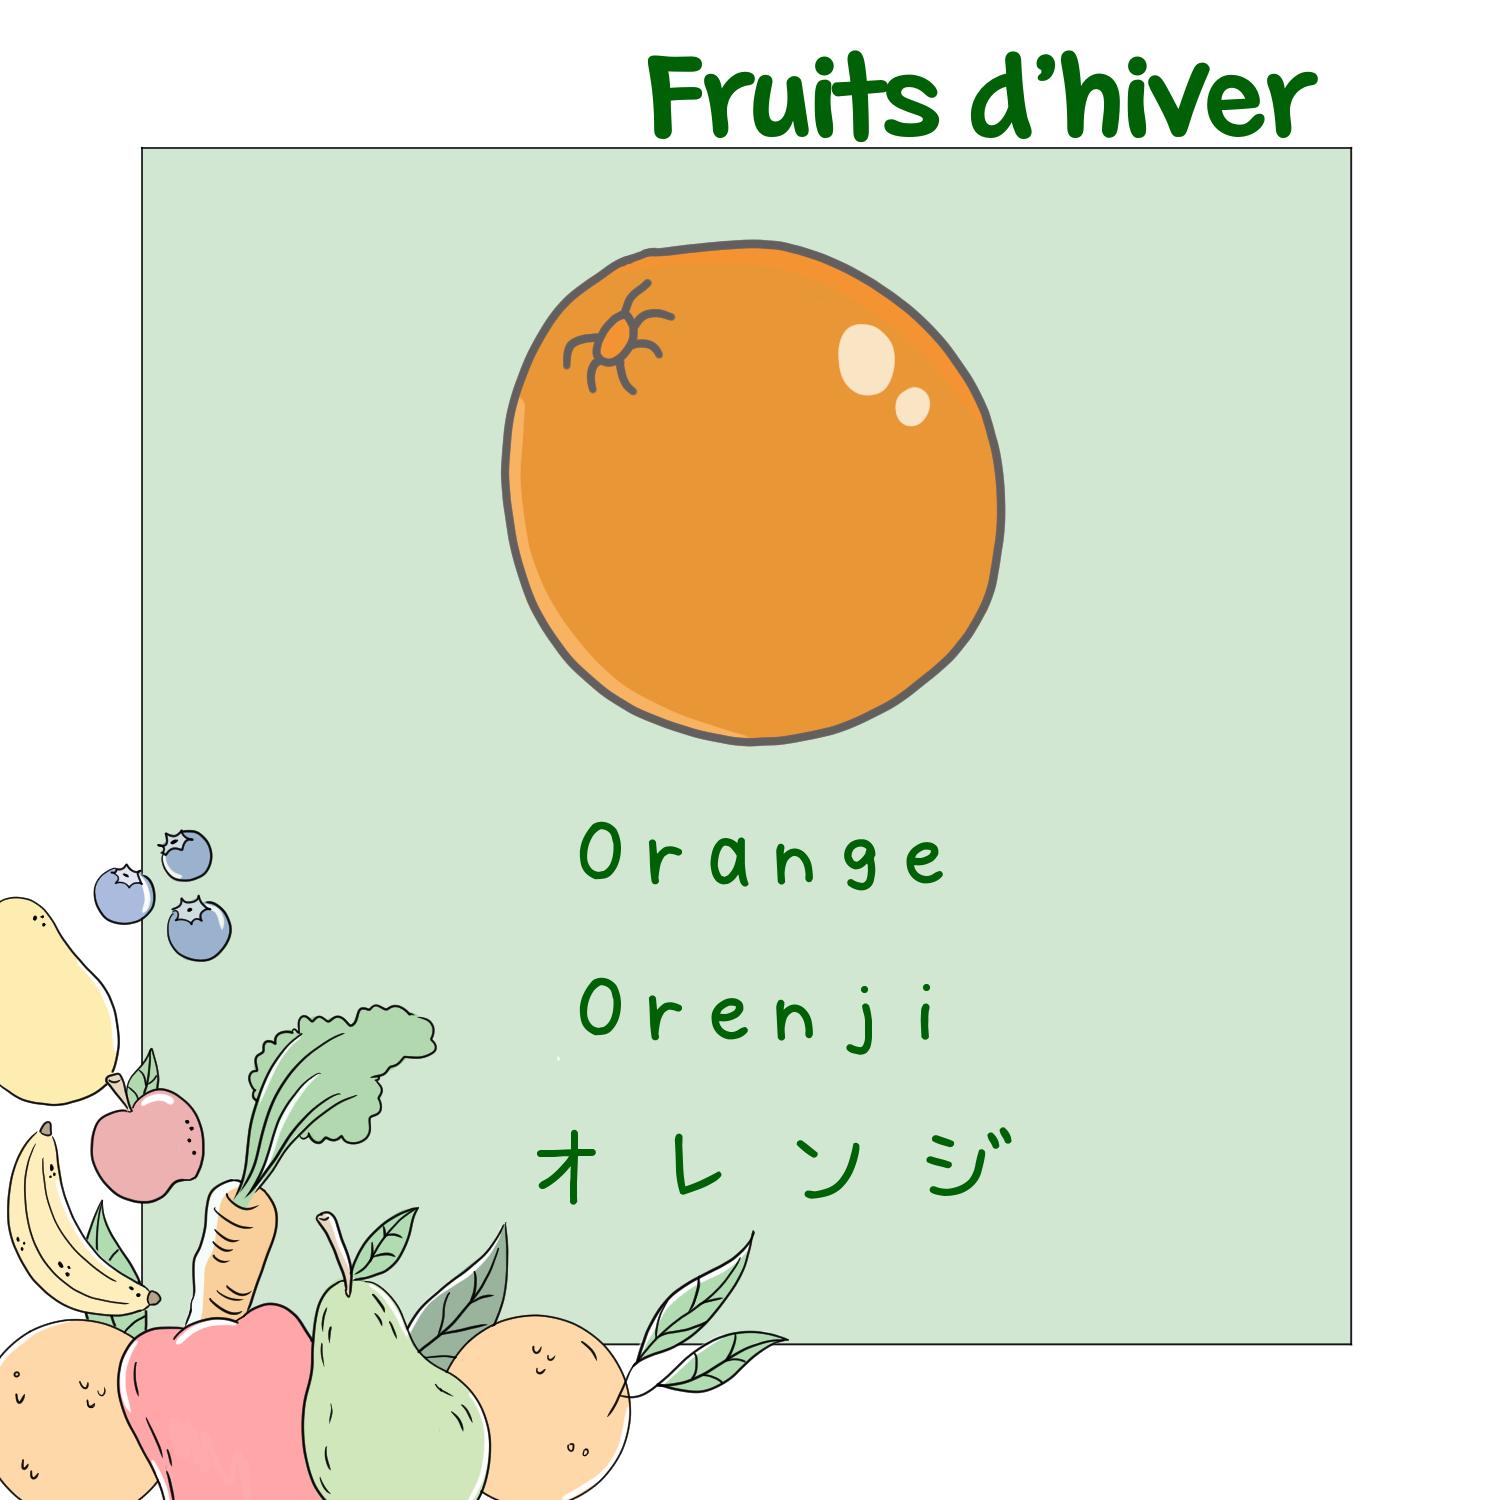 6) Orange